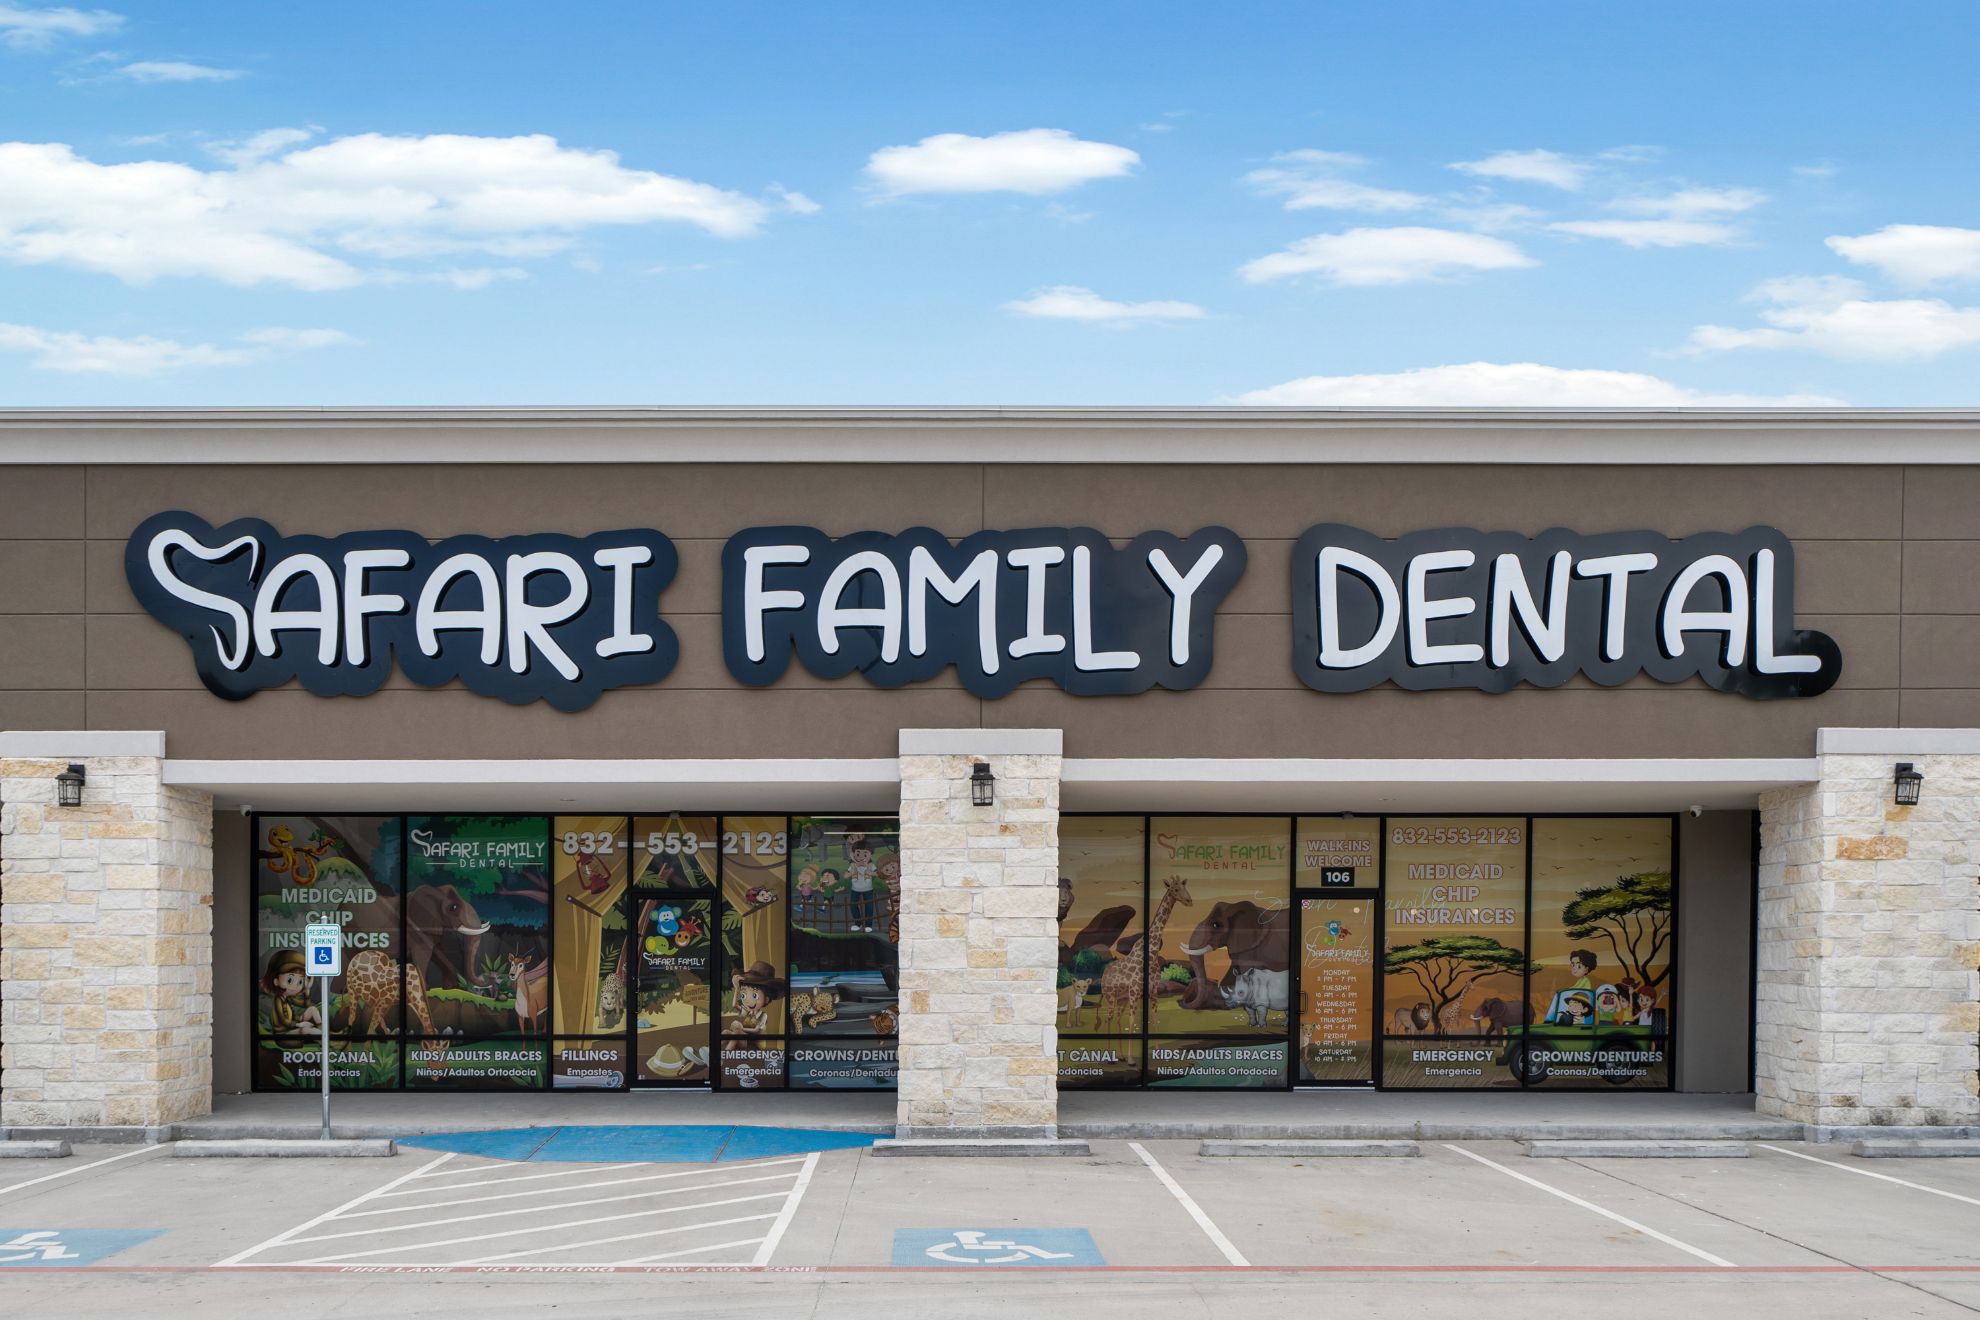 safari family dental & orthodontics houston photos